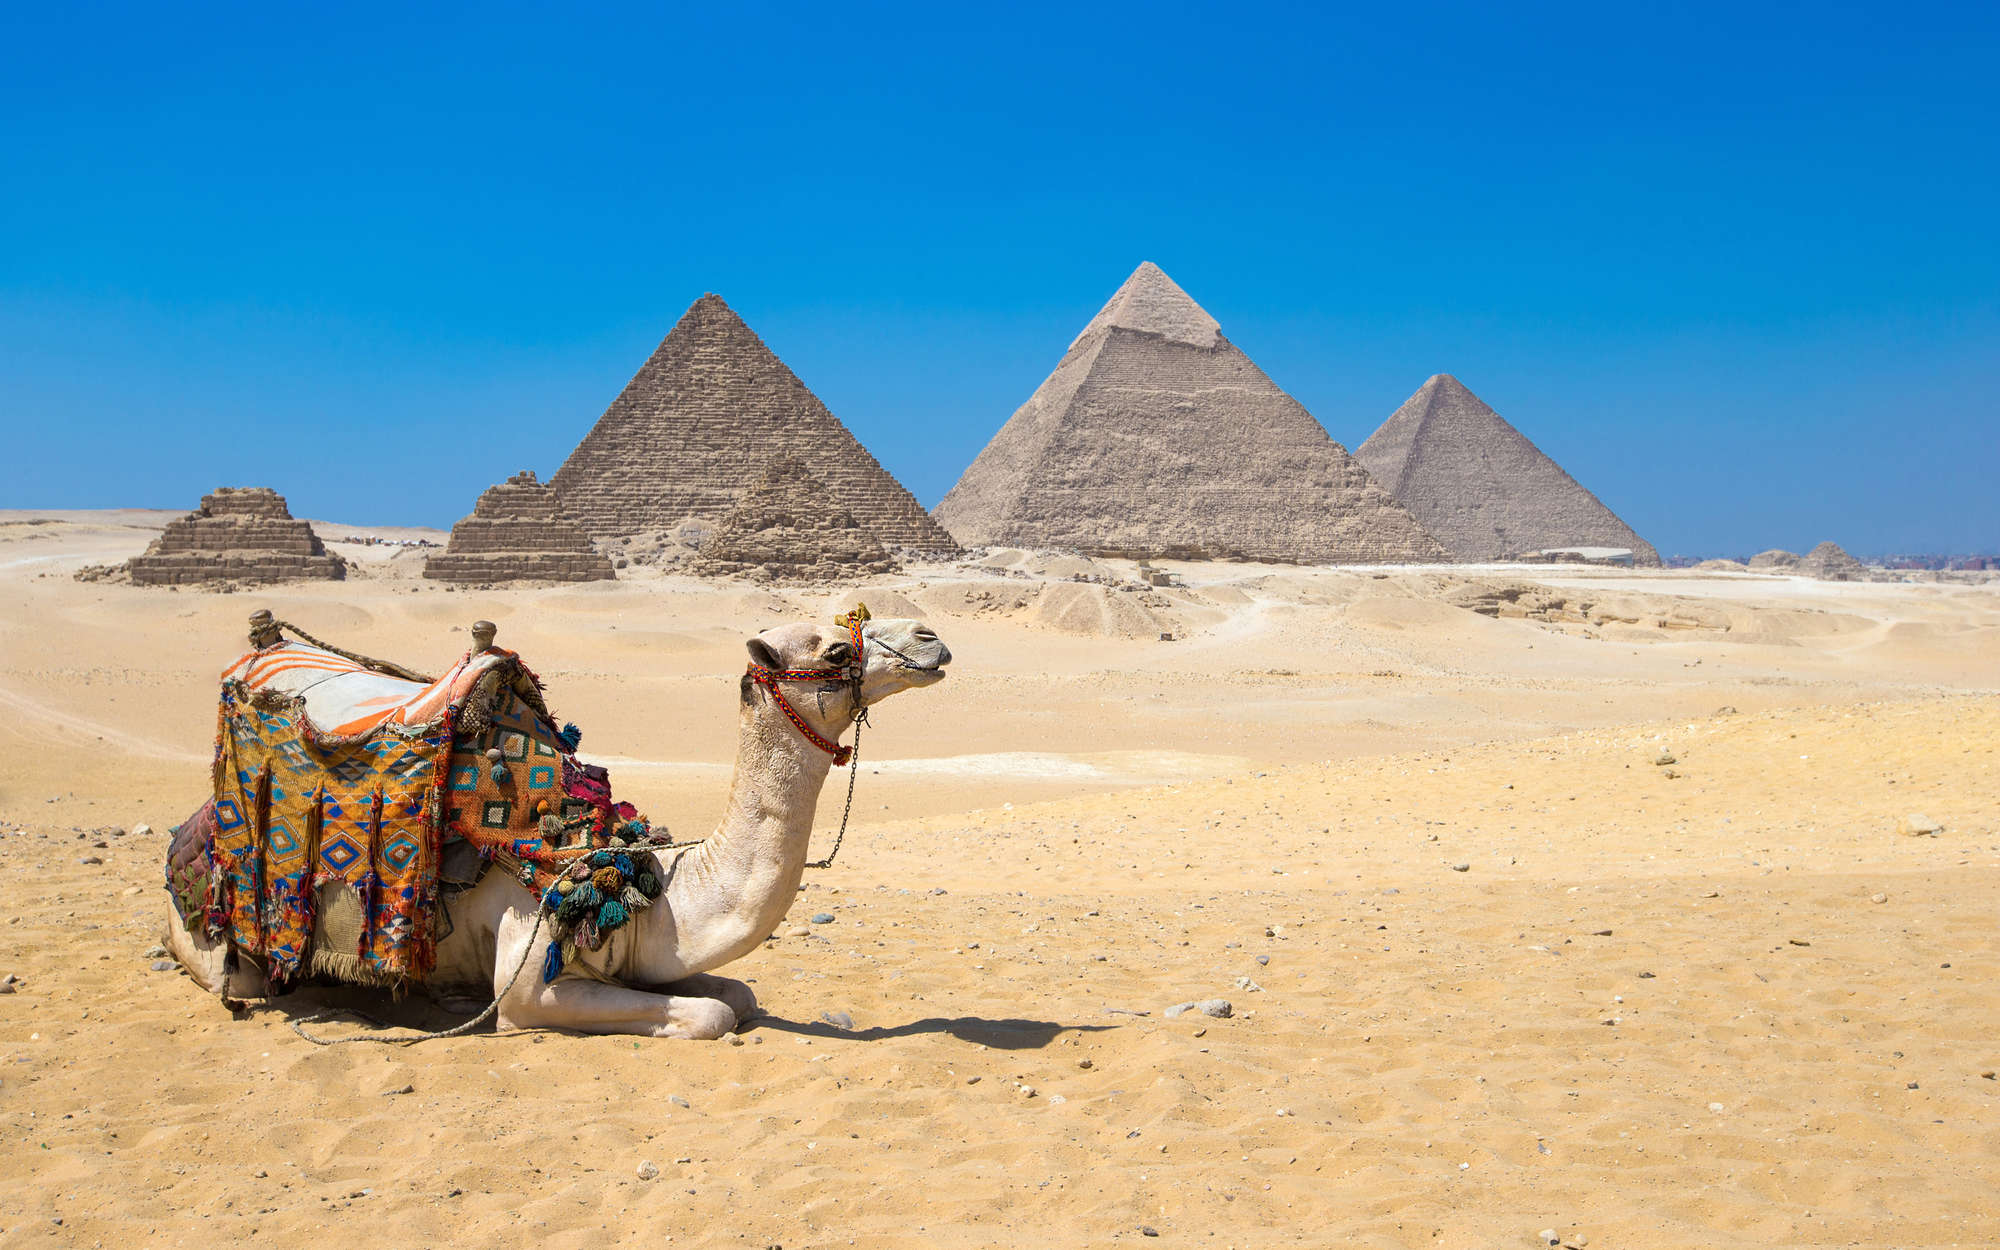             Fotomurali Piramidi di Giza con cammello - vello liscio in madreperla
        